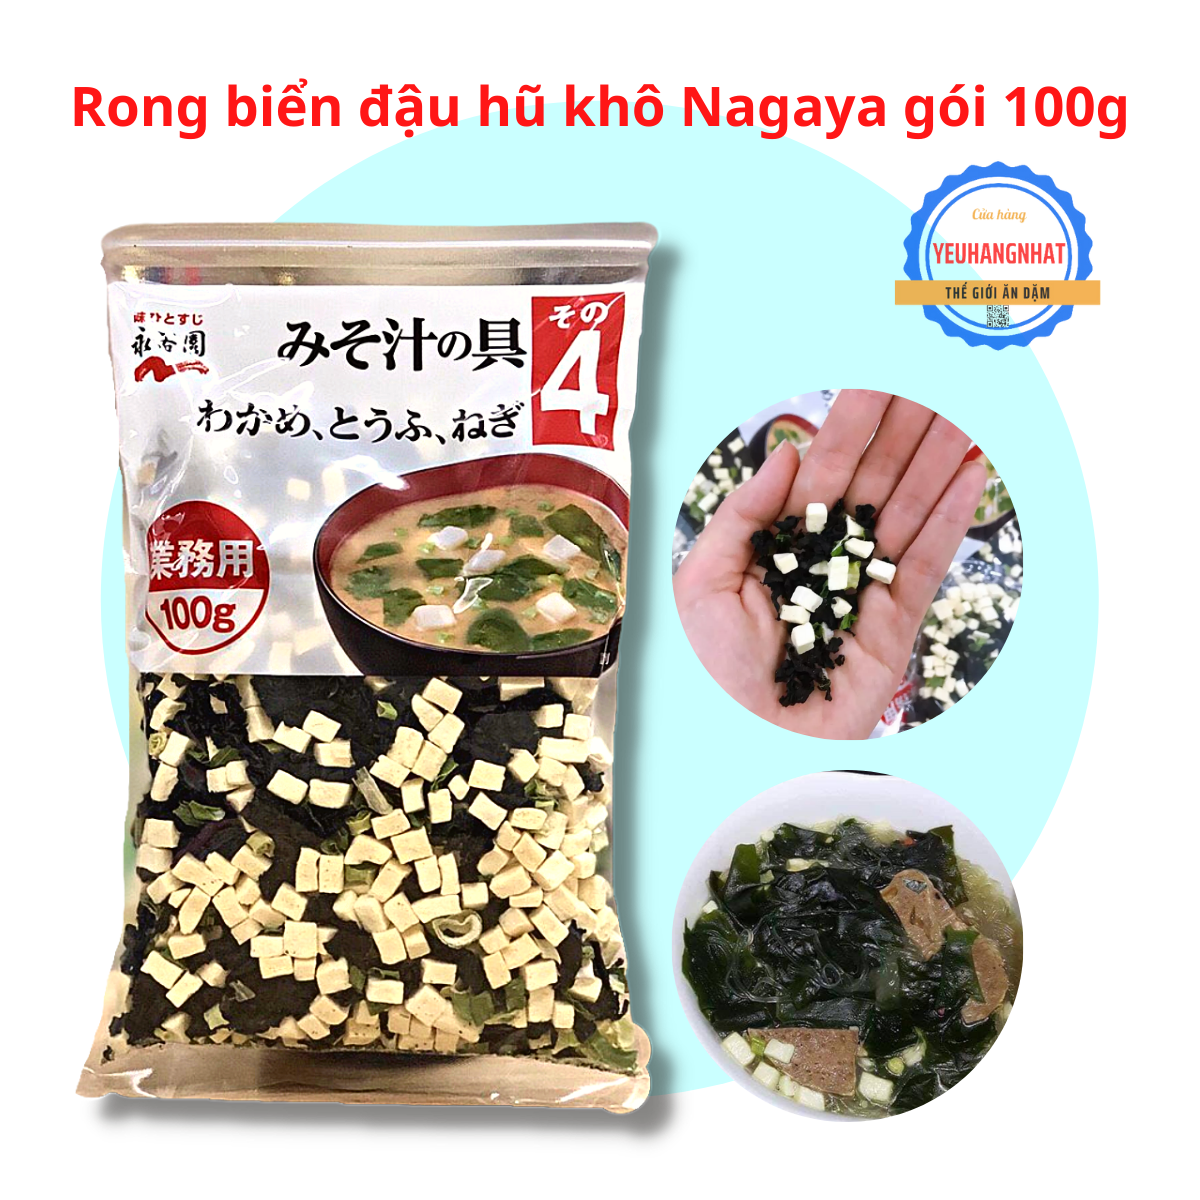 Rong biển đậu hũ khô Nagaya 100g - Rong biển wakame đậu phụ khô gói 100g